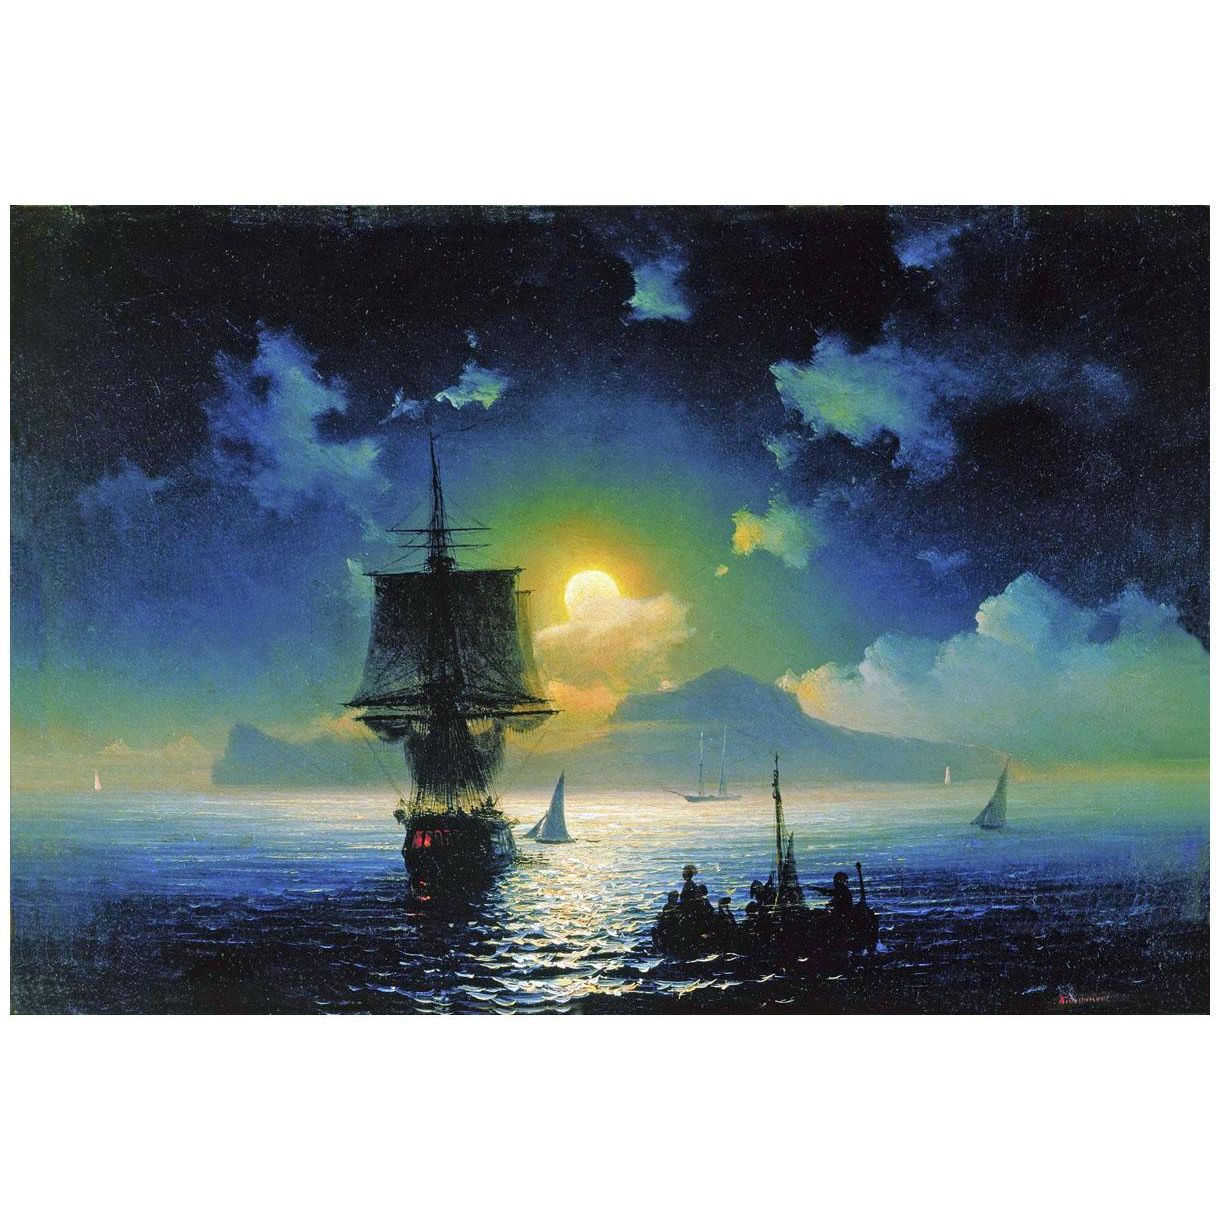 Иван Айвазовский. Лунная ночь на Капри. 1841. Третьяковская галерея